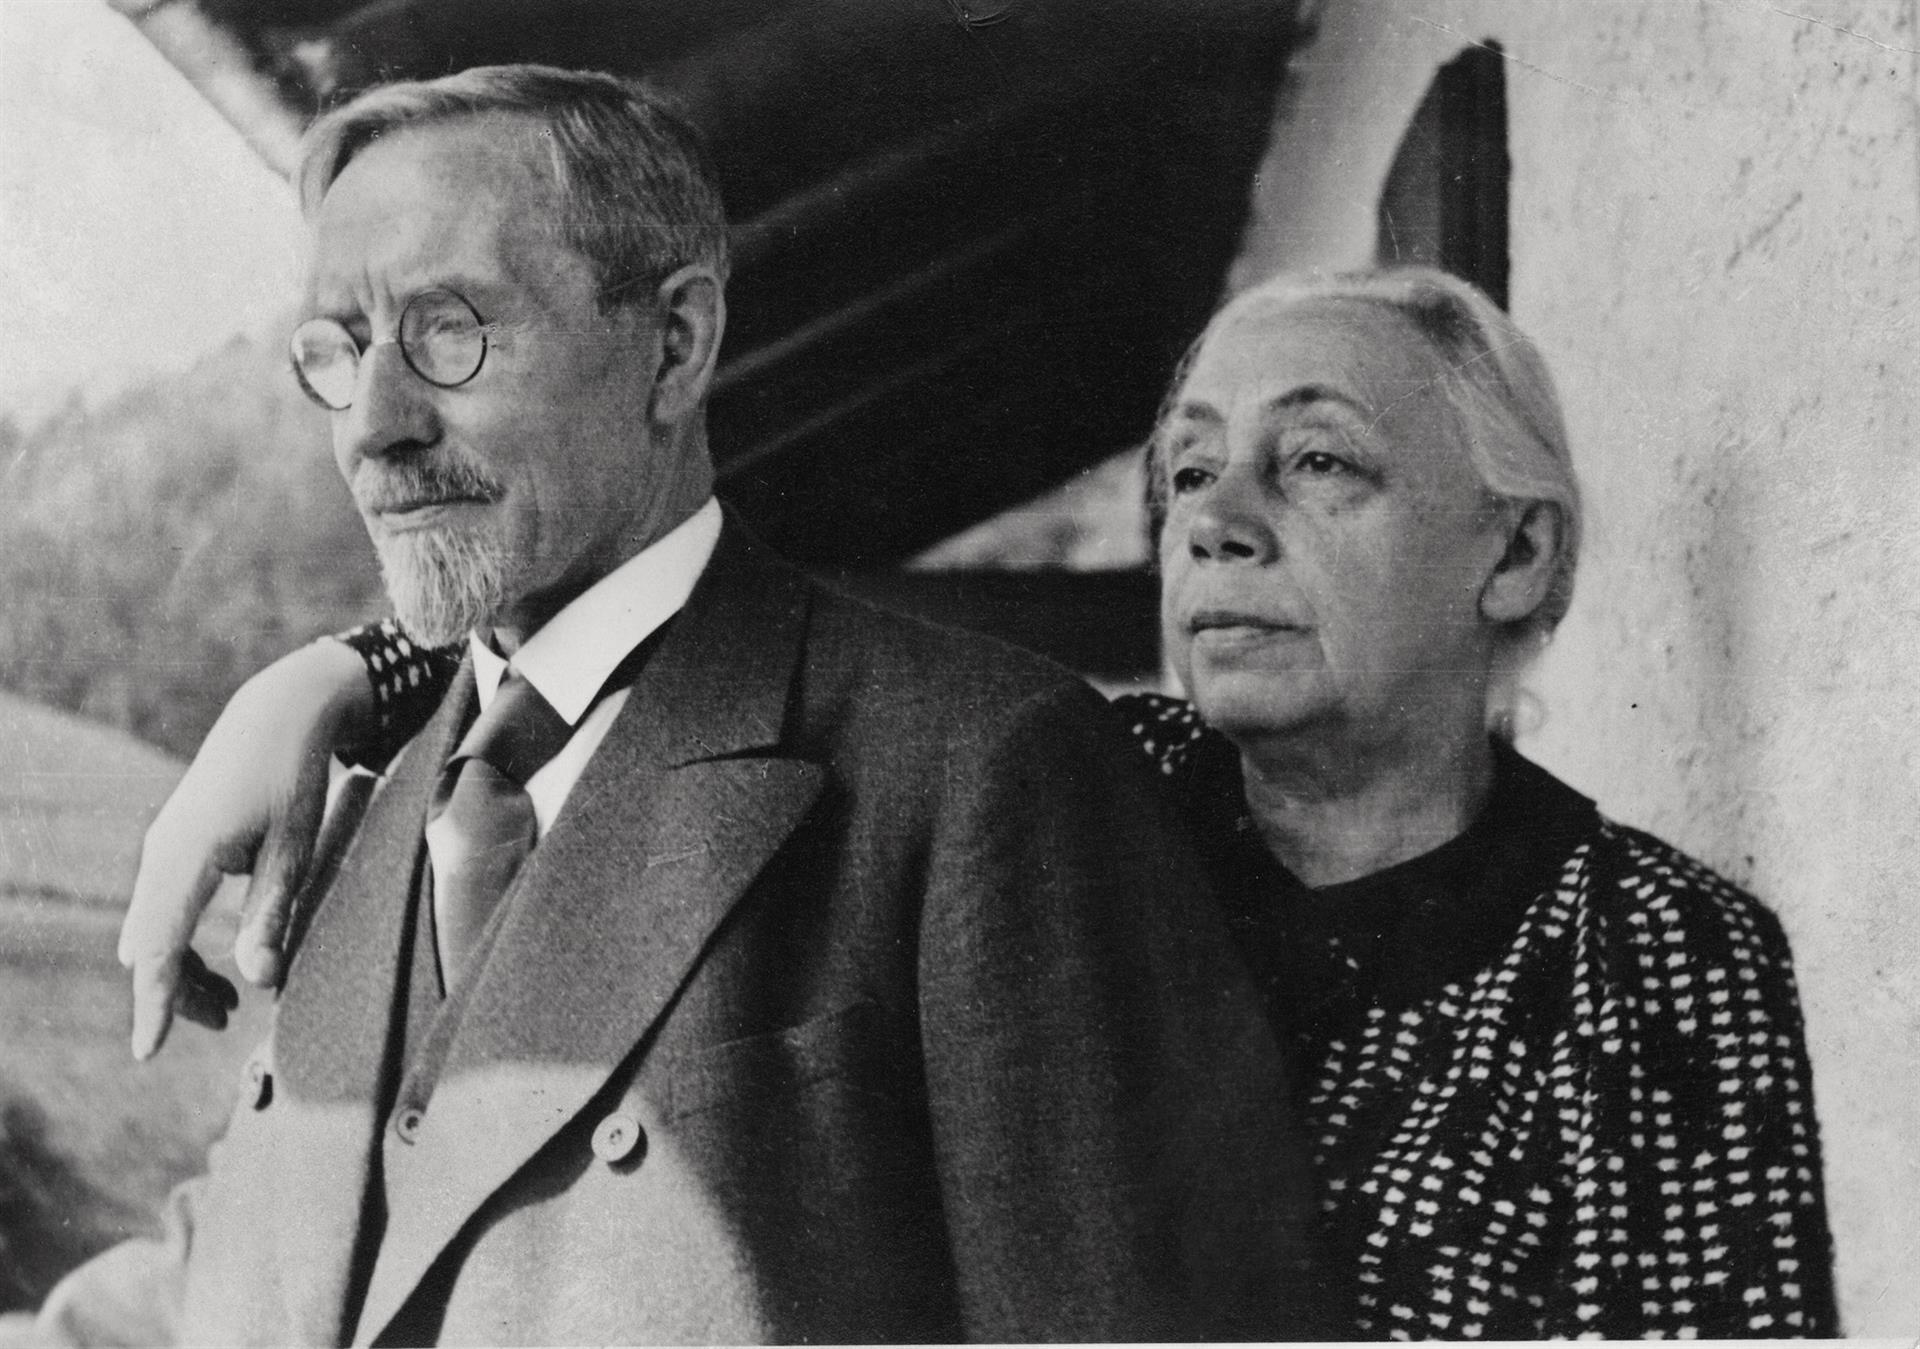 Käthe et Karl Kollwitz, 1933, photographe inconnu, succession Kollwitz © Käthe Kollwitz Museum Köln